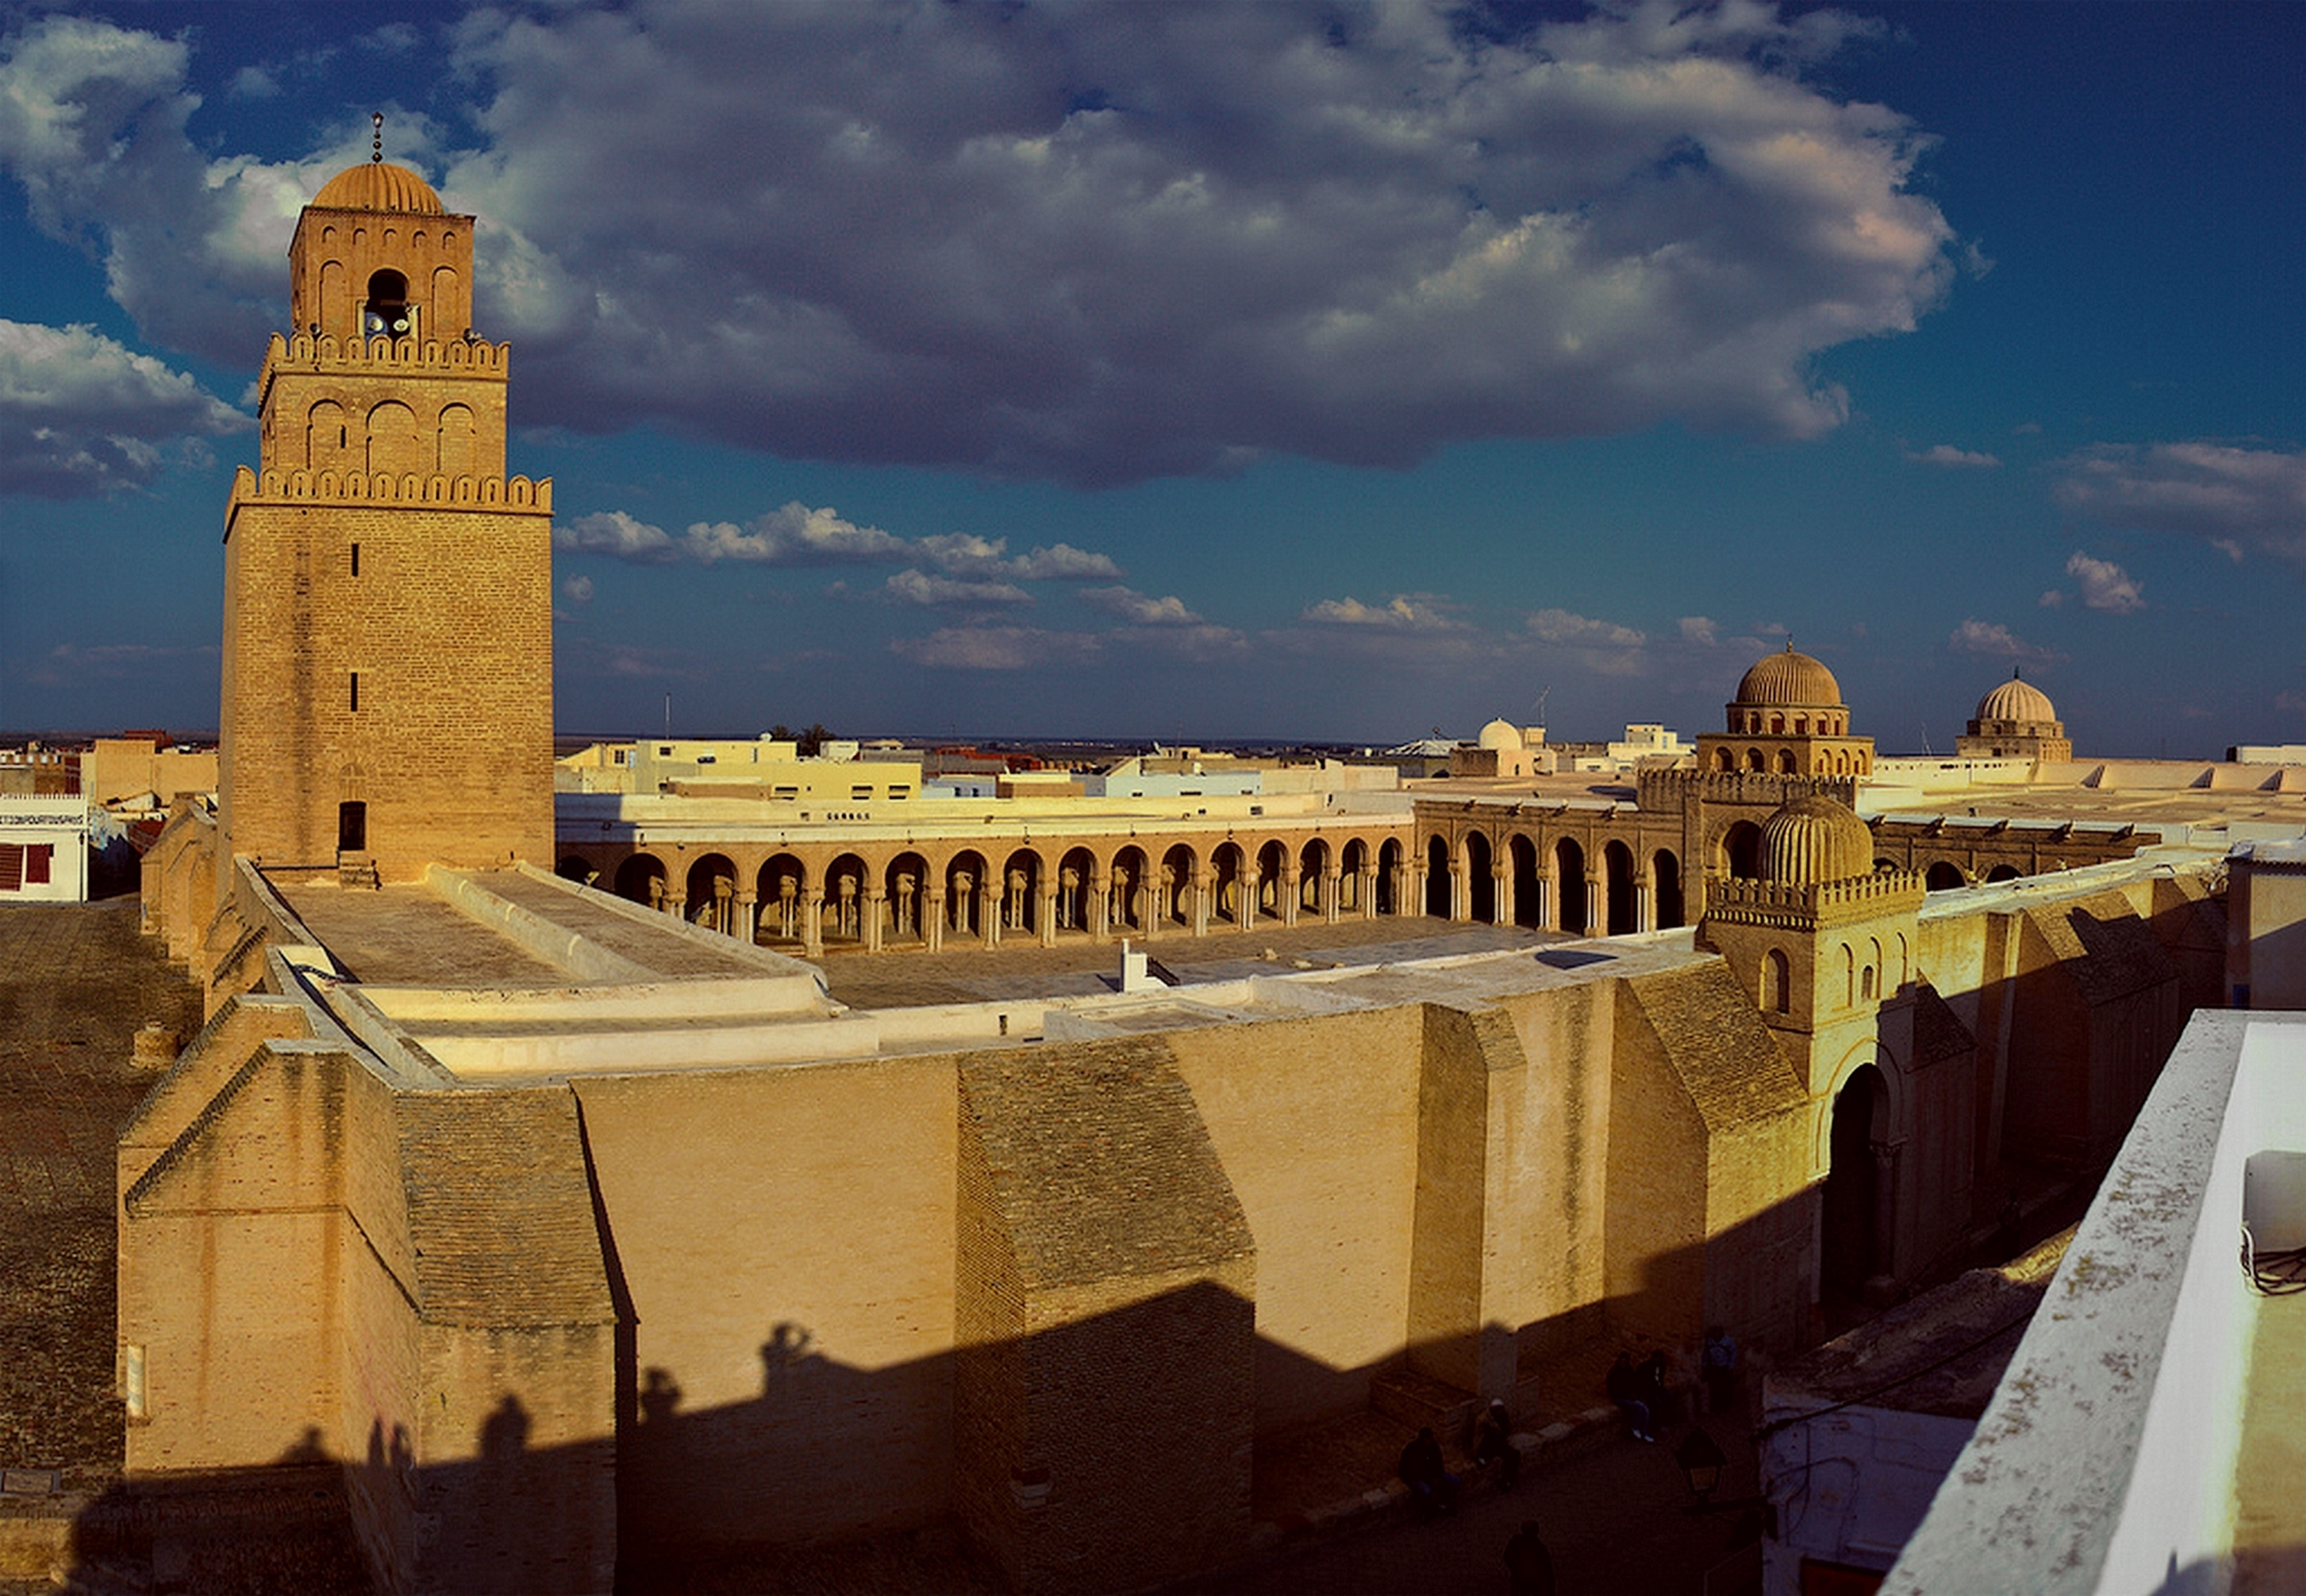 İslâm dünyasındaki en eski ibadet yerlerinden biri olan Tunus'taki Kayrevan Ulu Camii, Mağrip'te daha sonra inşa edilen camiler için örnek teşkil etmiştir.